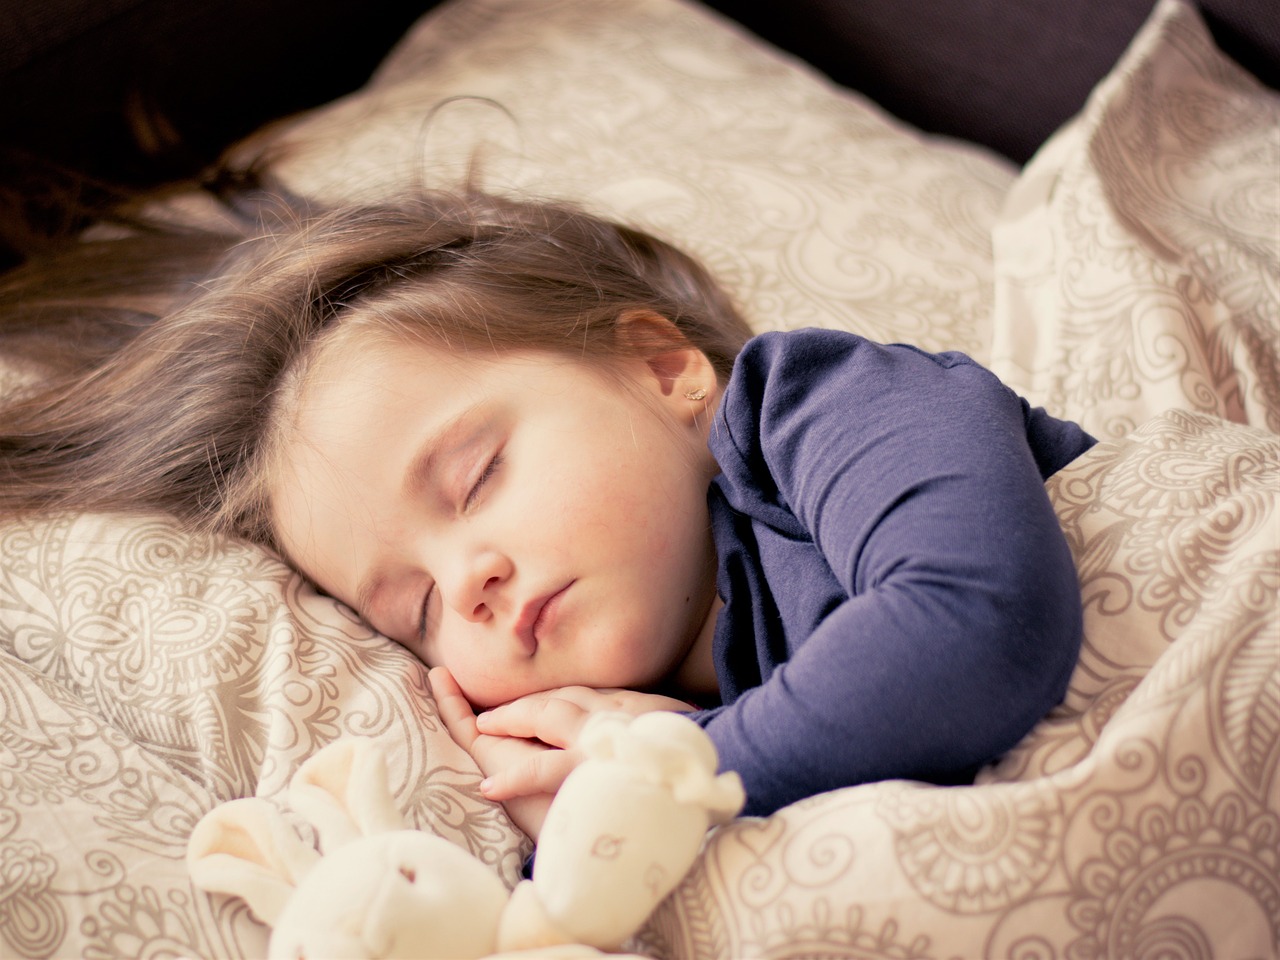 Problemy ze snem u dzieci